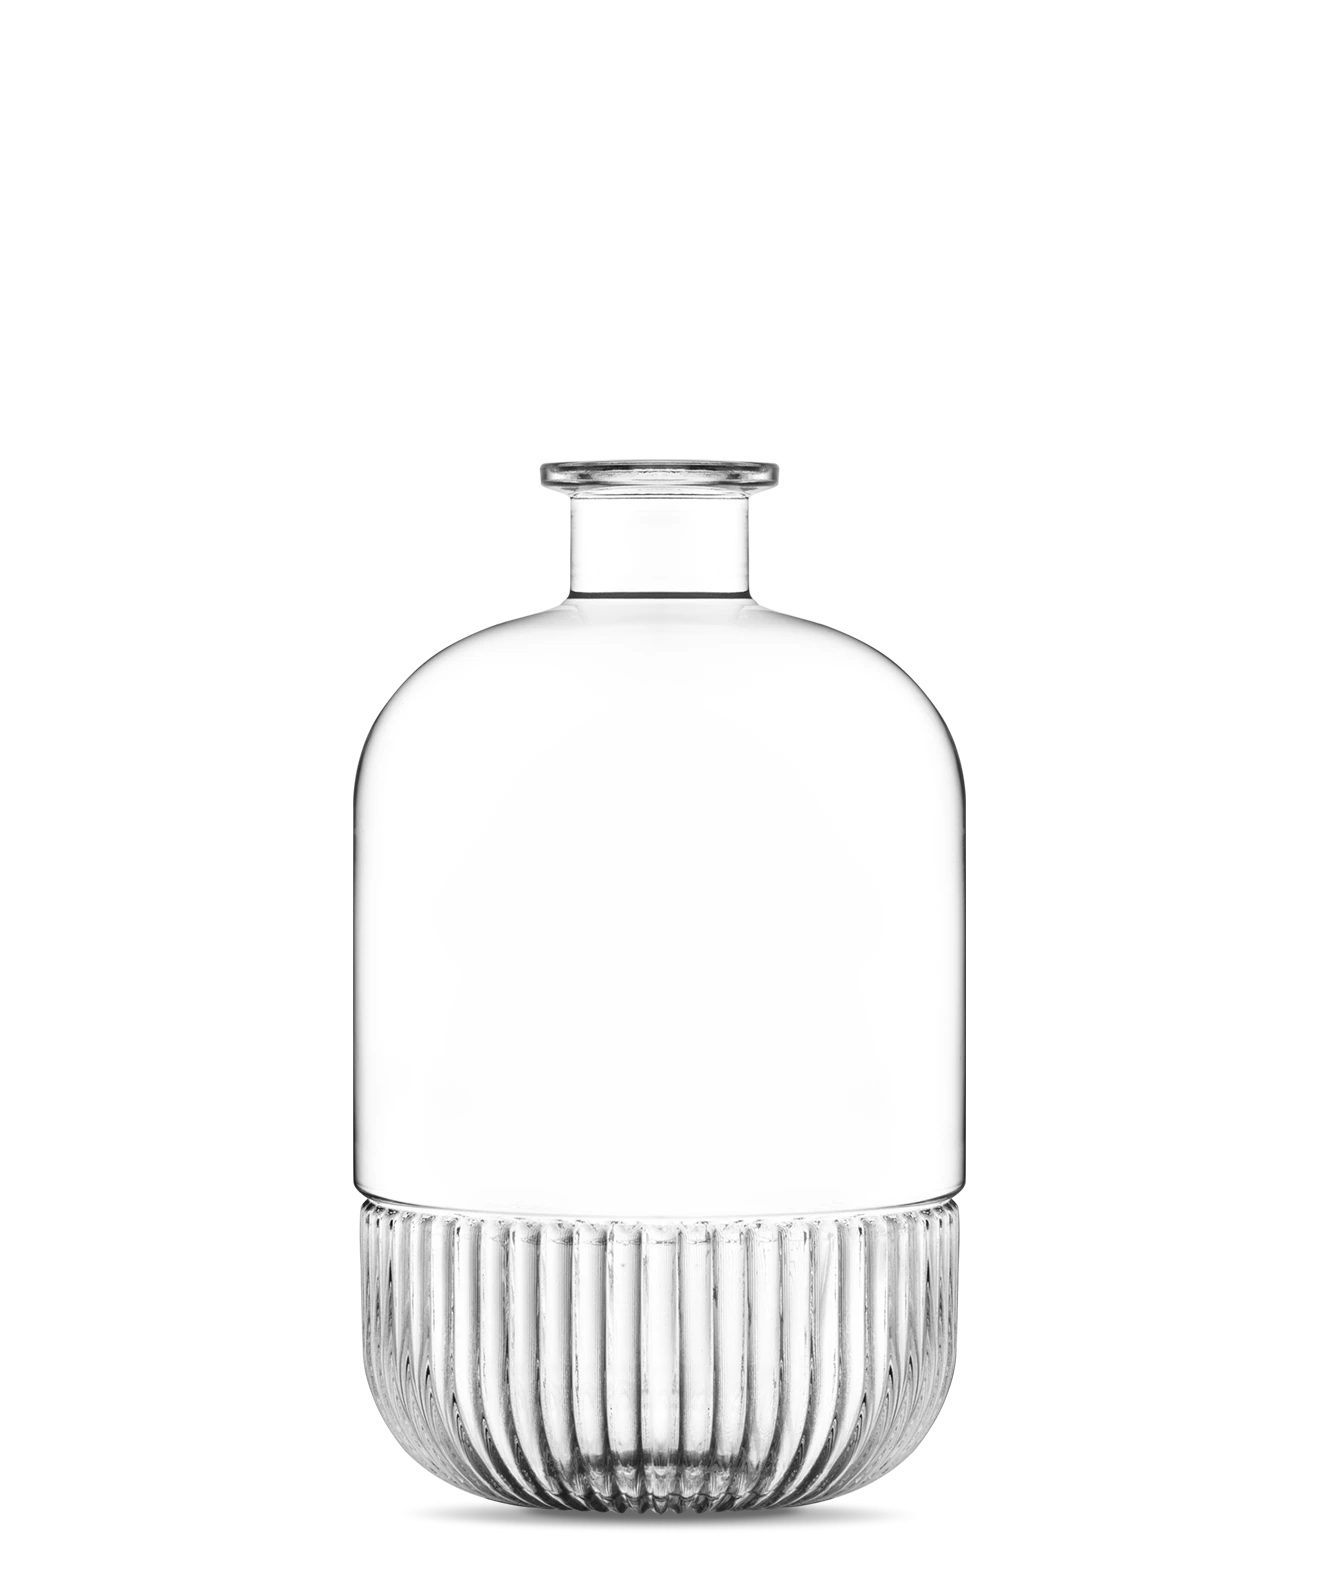 manila-bottle-for-room-fragrances-vetroelite-view1